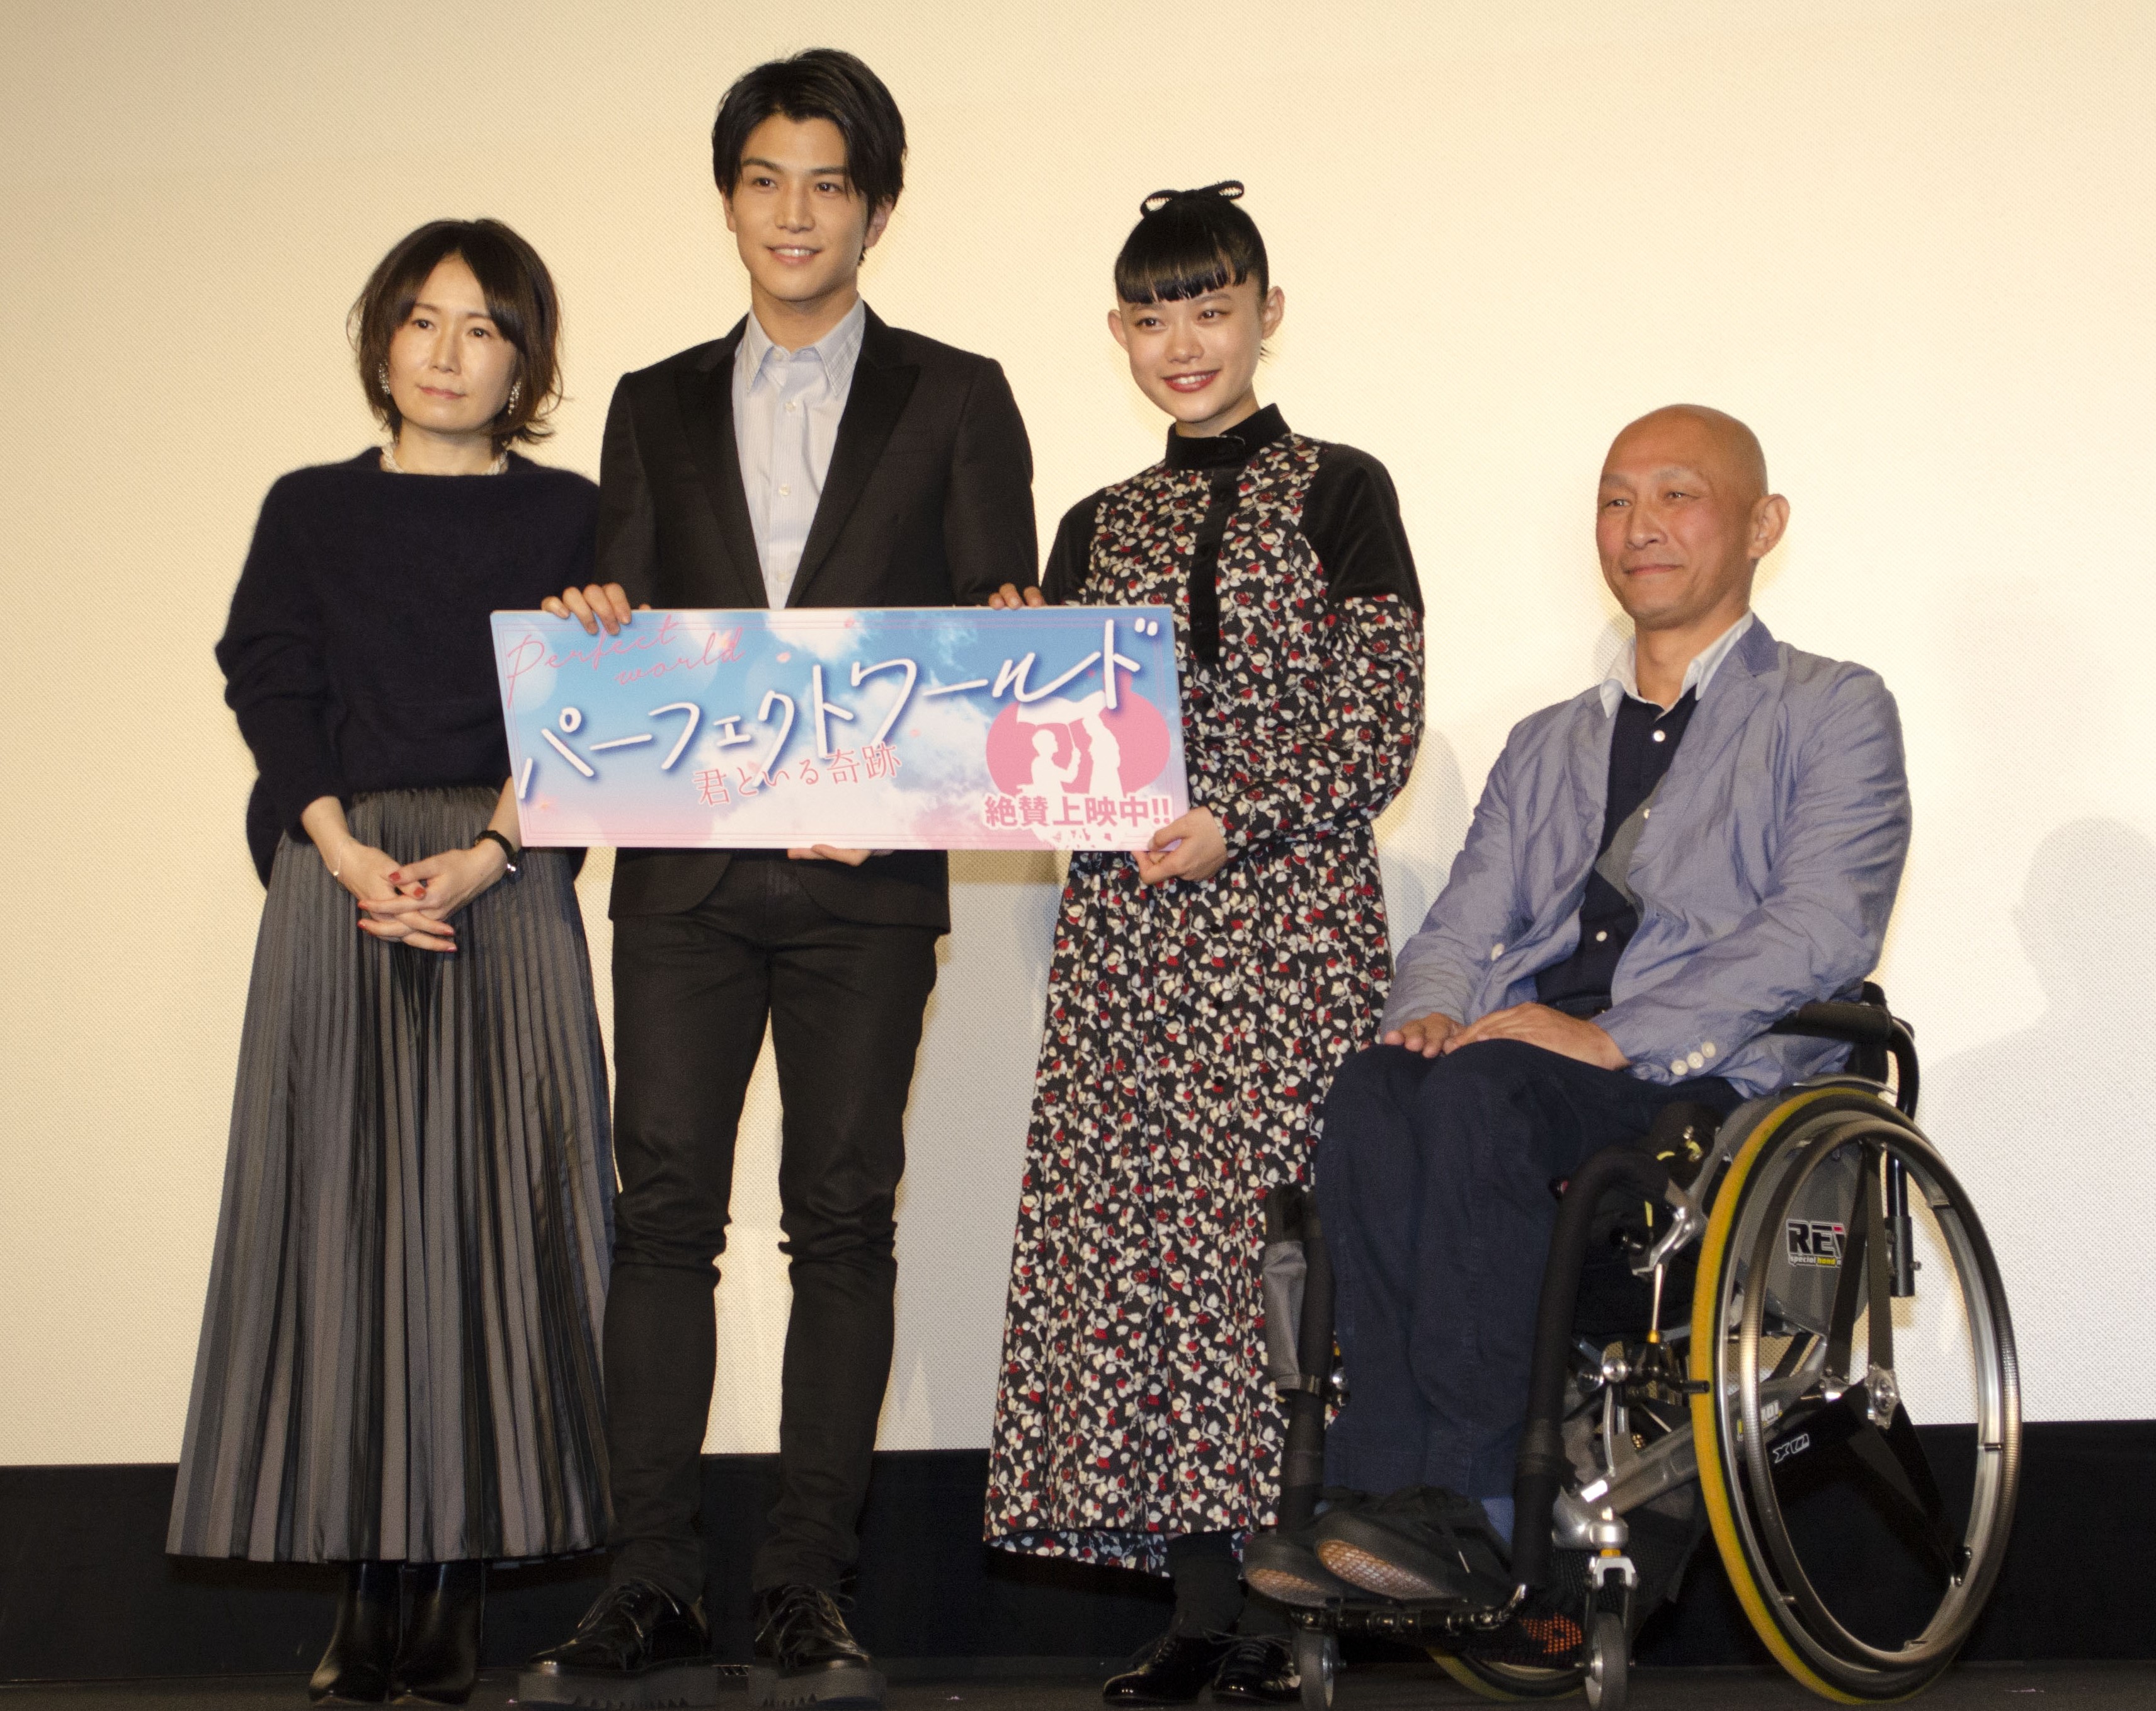 主演の岩田さん、杉咲さん、原作者の有賀リエ先生、主人公のモチーフとなった車椅子の建築士・阿部一雄さんによる舞台挨拶の様子